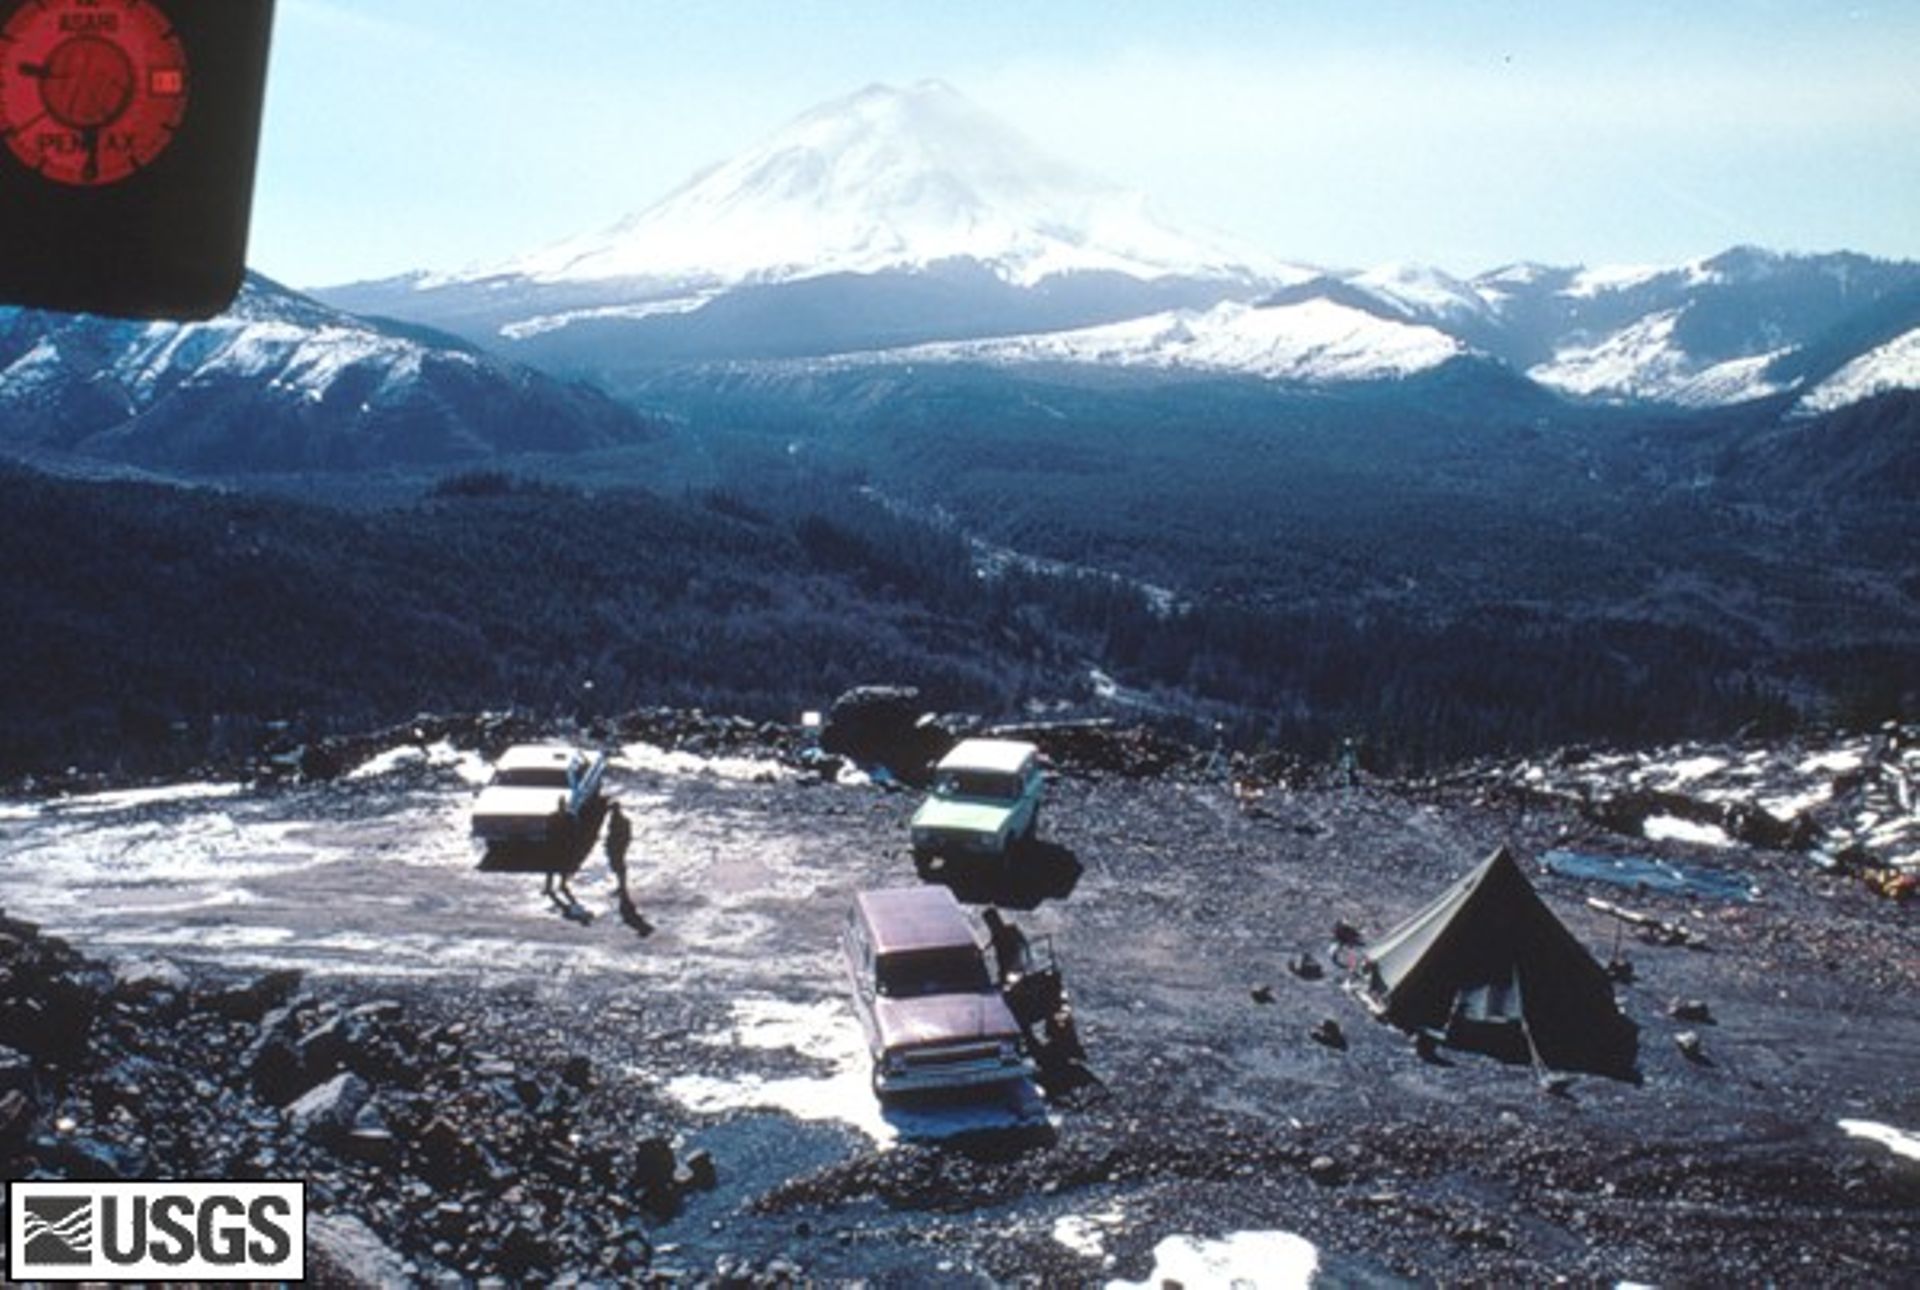 Le camp de base de Coldwter Ridge, à 10 kilomètres du Mont Saint Helens où les volcanologues installeront leur observatoire.  